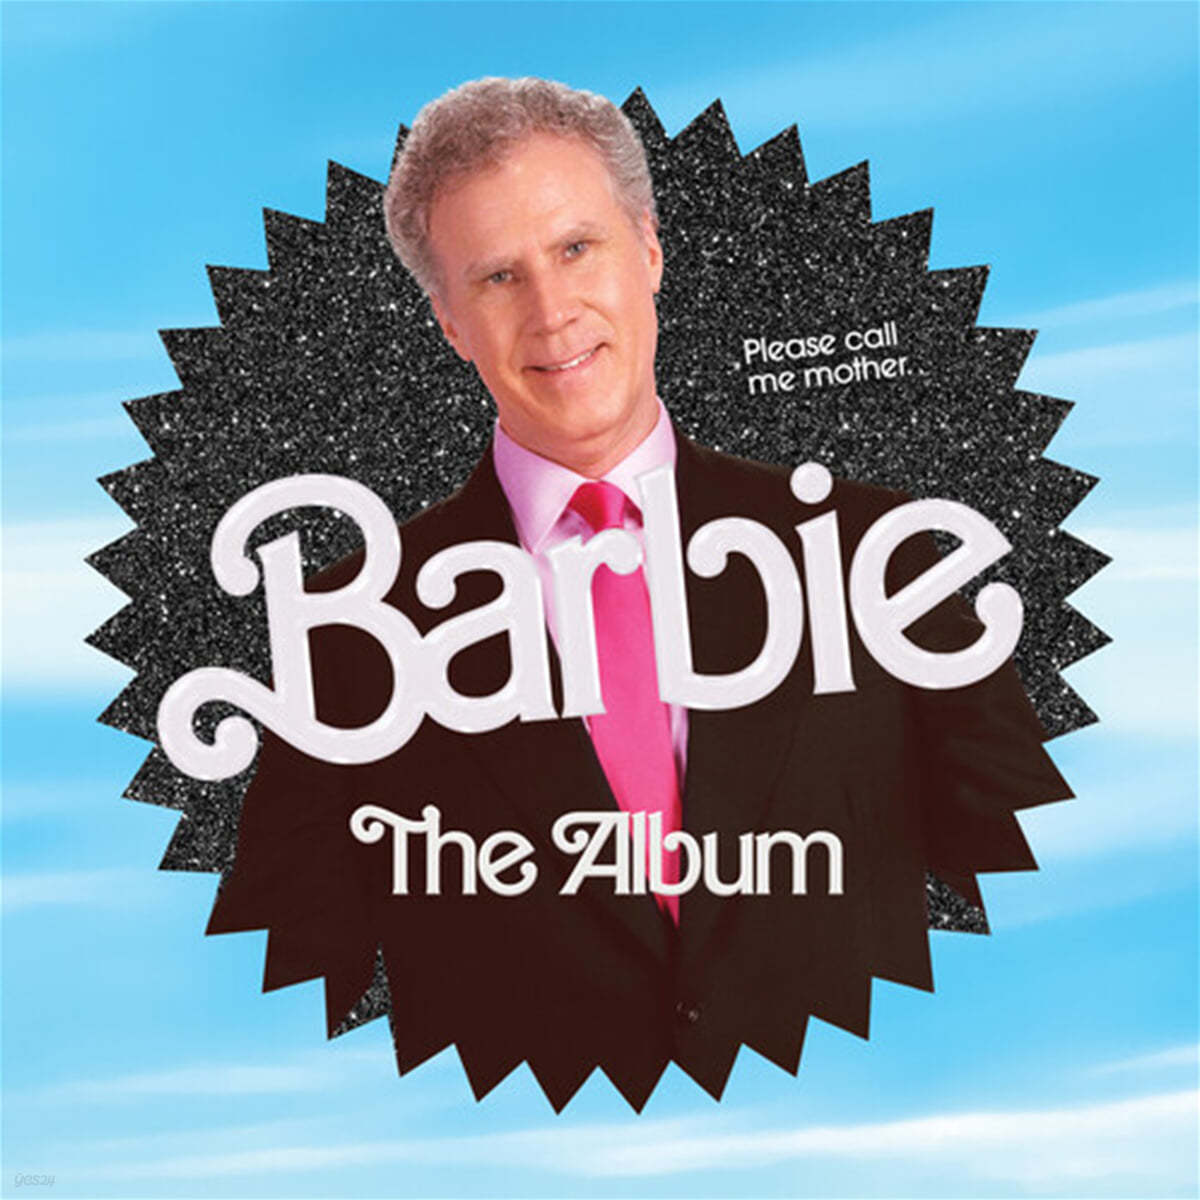 바비 영화음악 (Barbie The Album OST - Will Ferrell edition) 